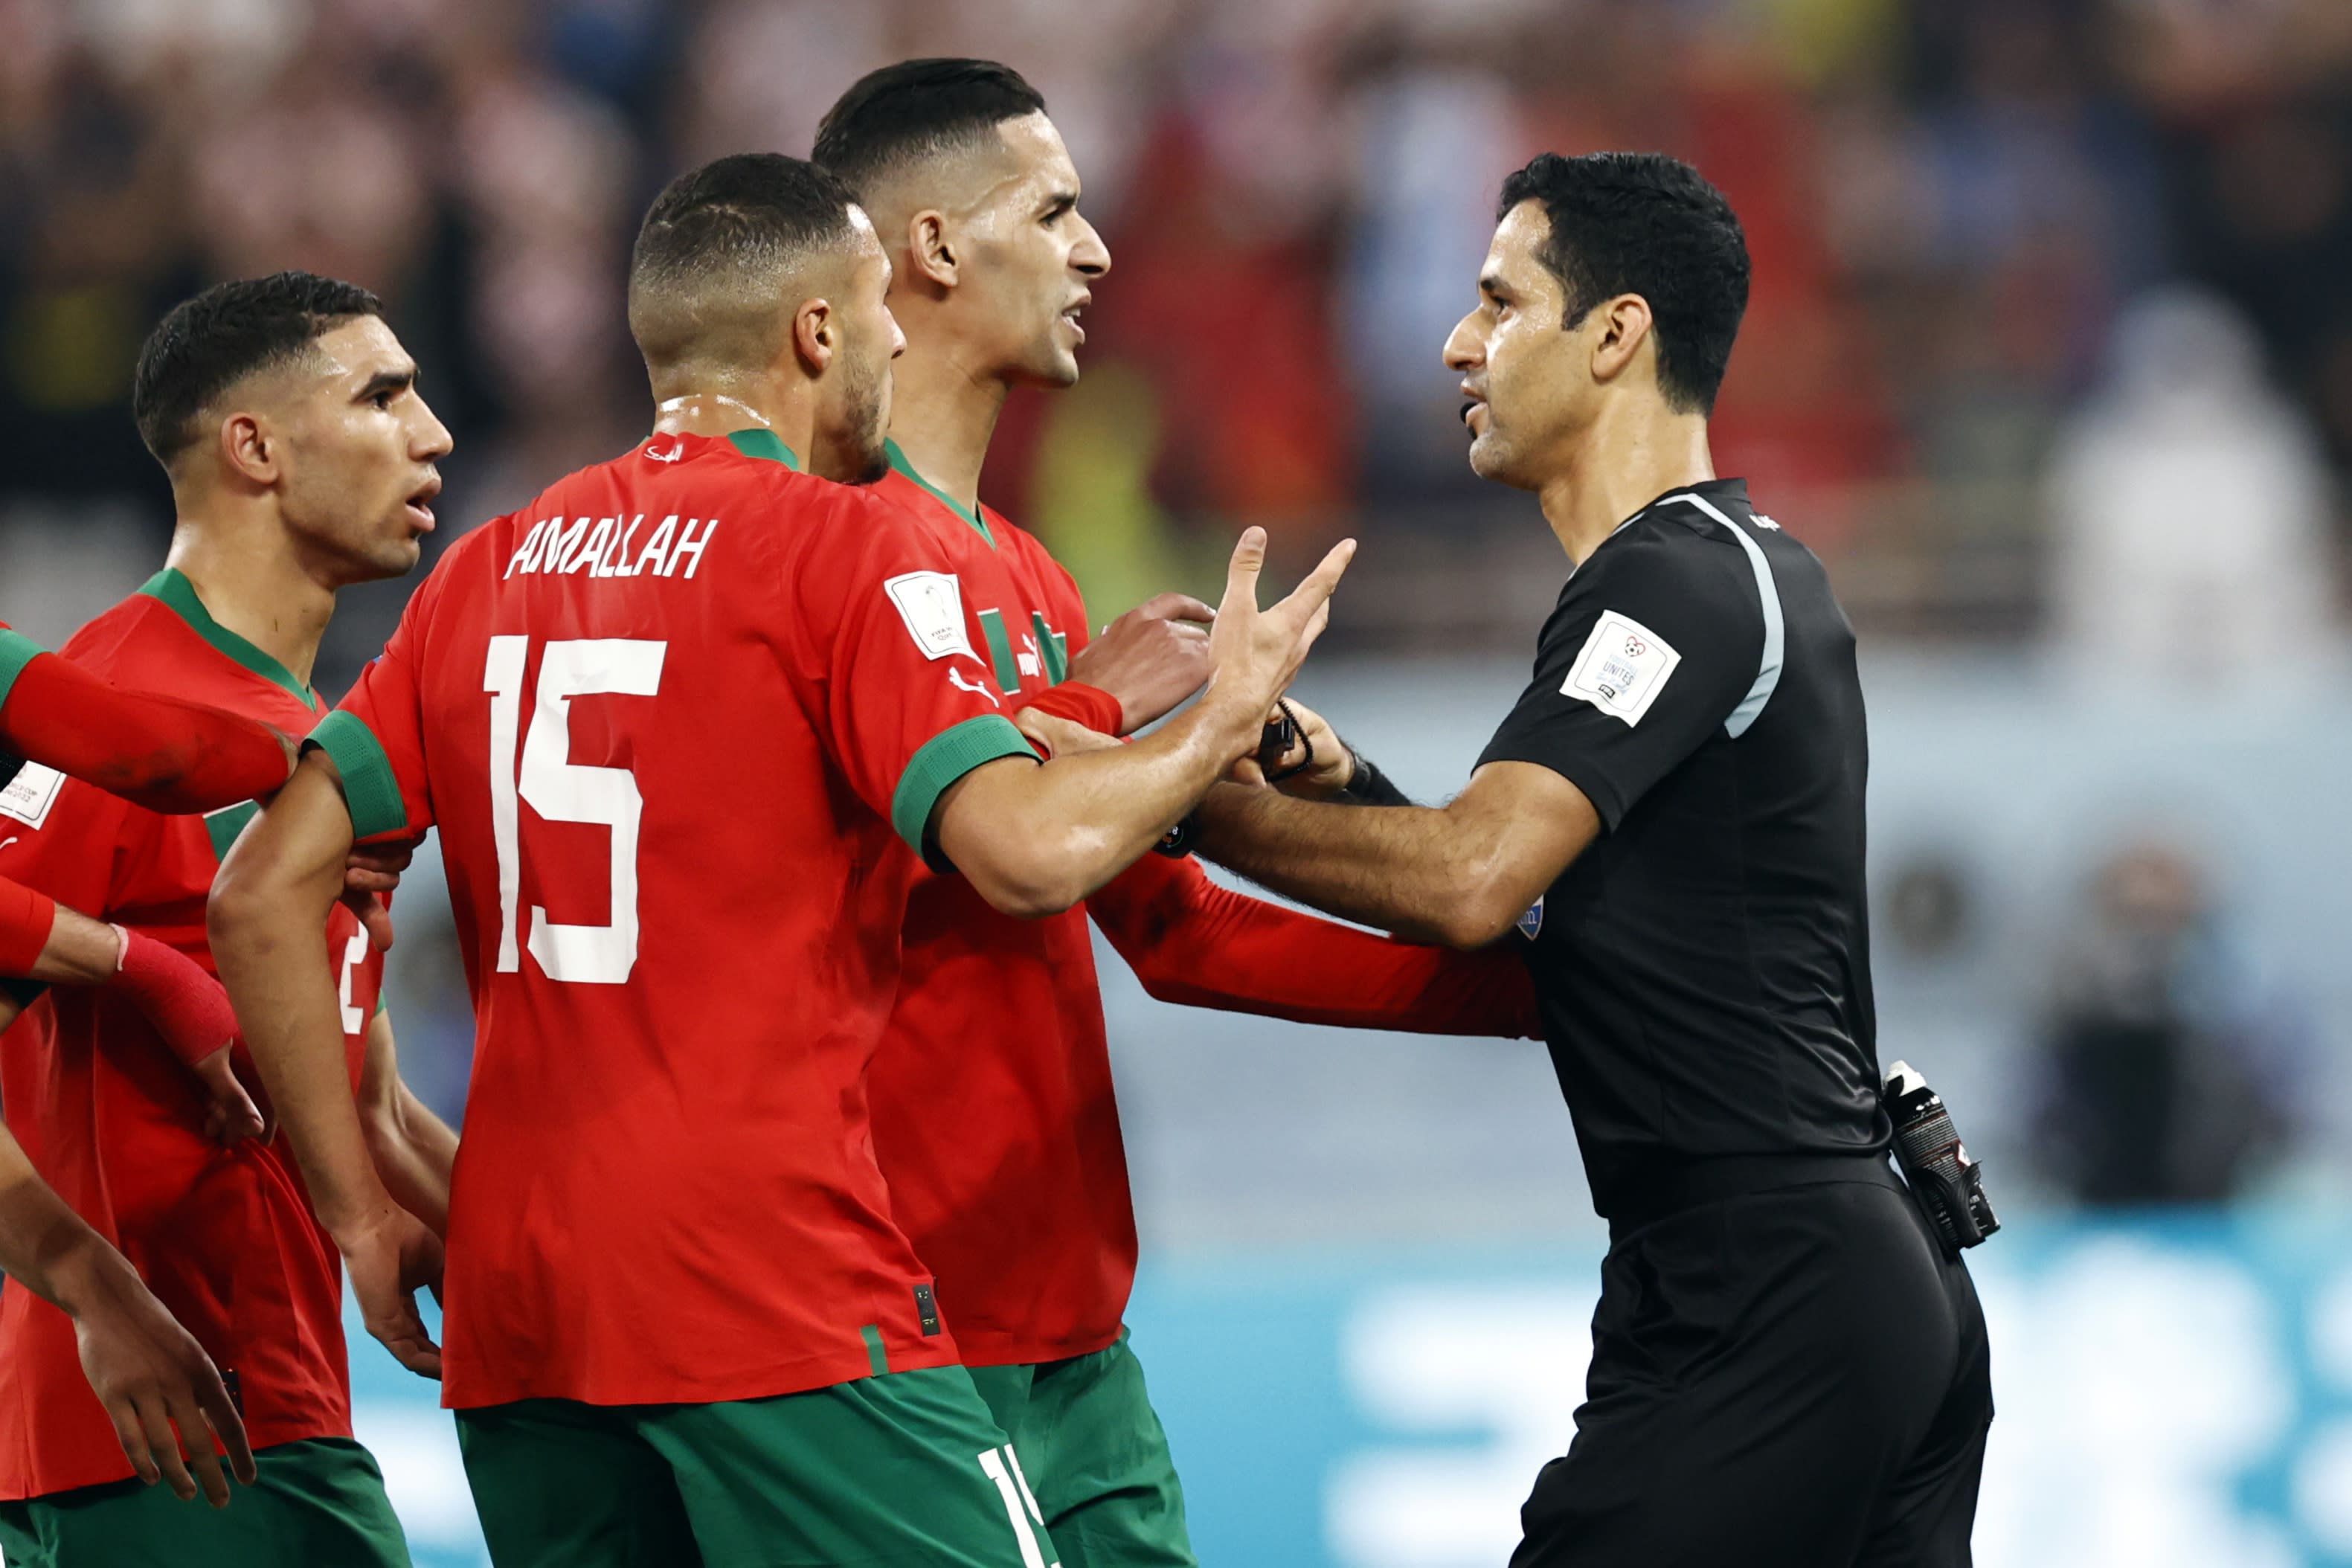 Marokko verliest strijd om brons van Kroatië op WK-voetbal